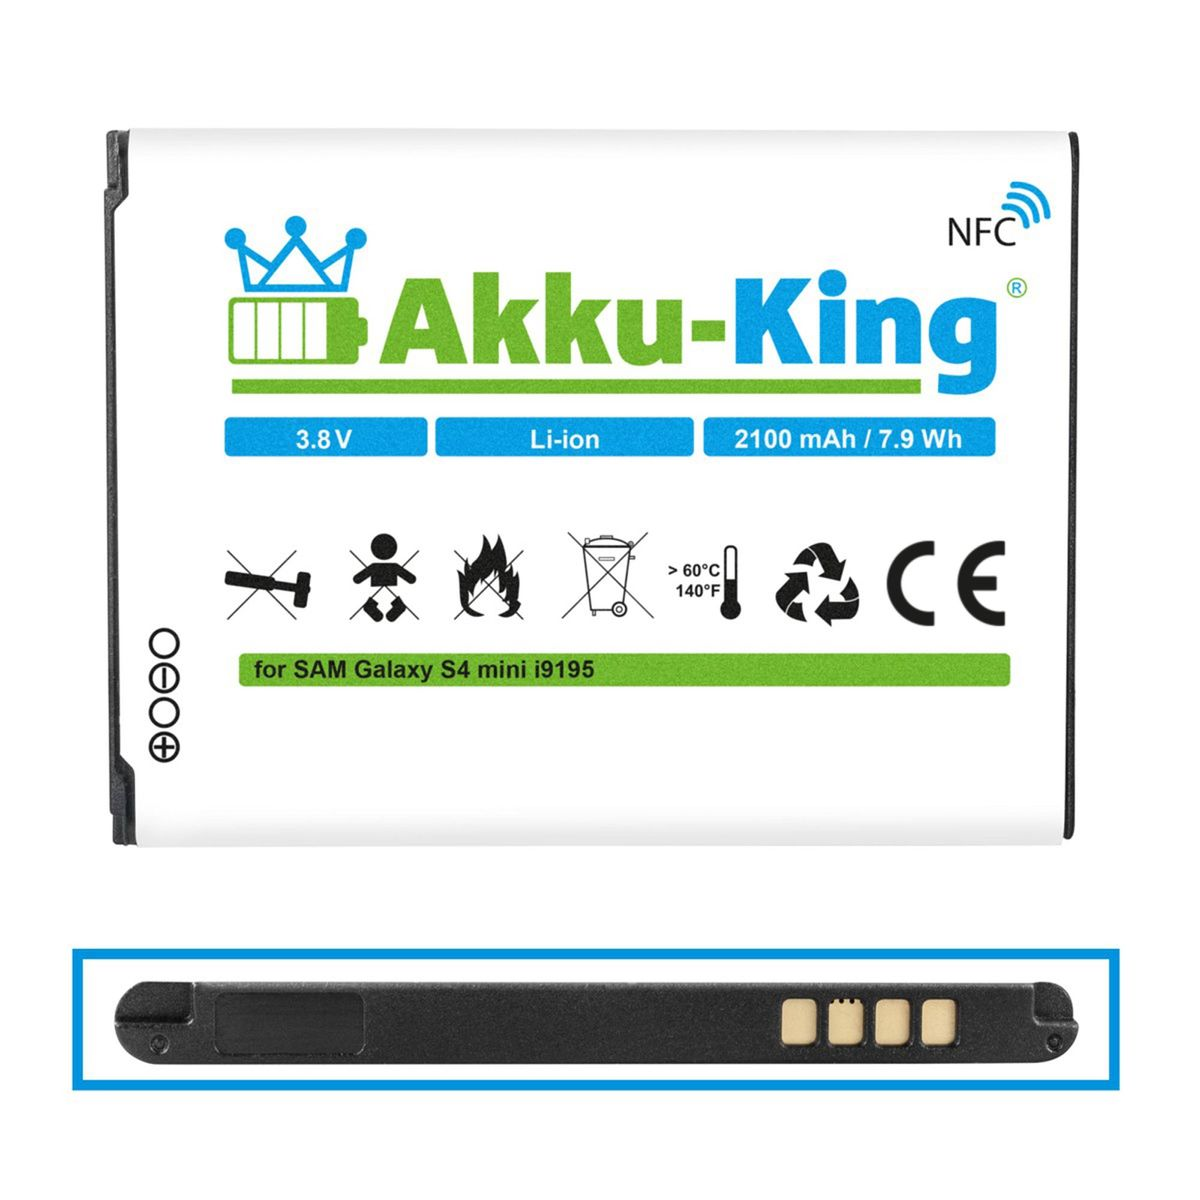 AKKU-KING Akku kompatibel mit Volt, Samsung Li-Ion 2100mAh EB-B500BE Handy-Akku, 3.8 NFC